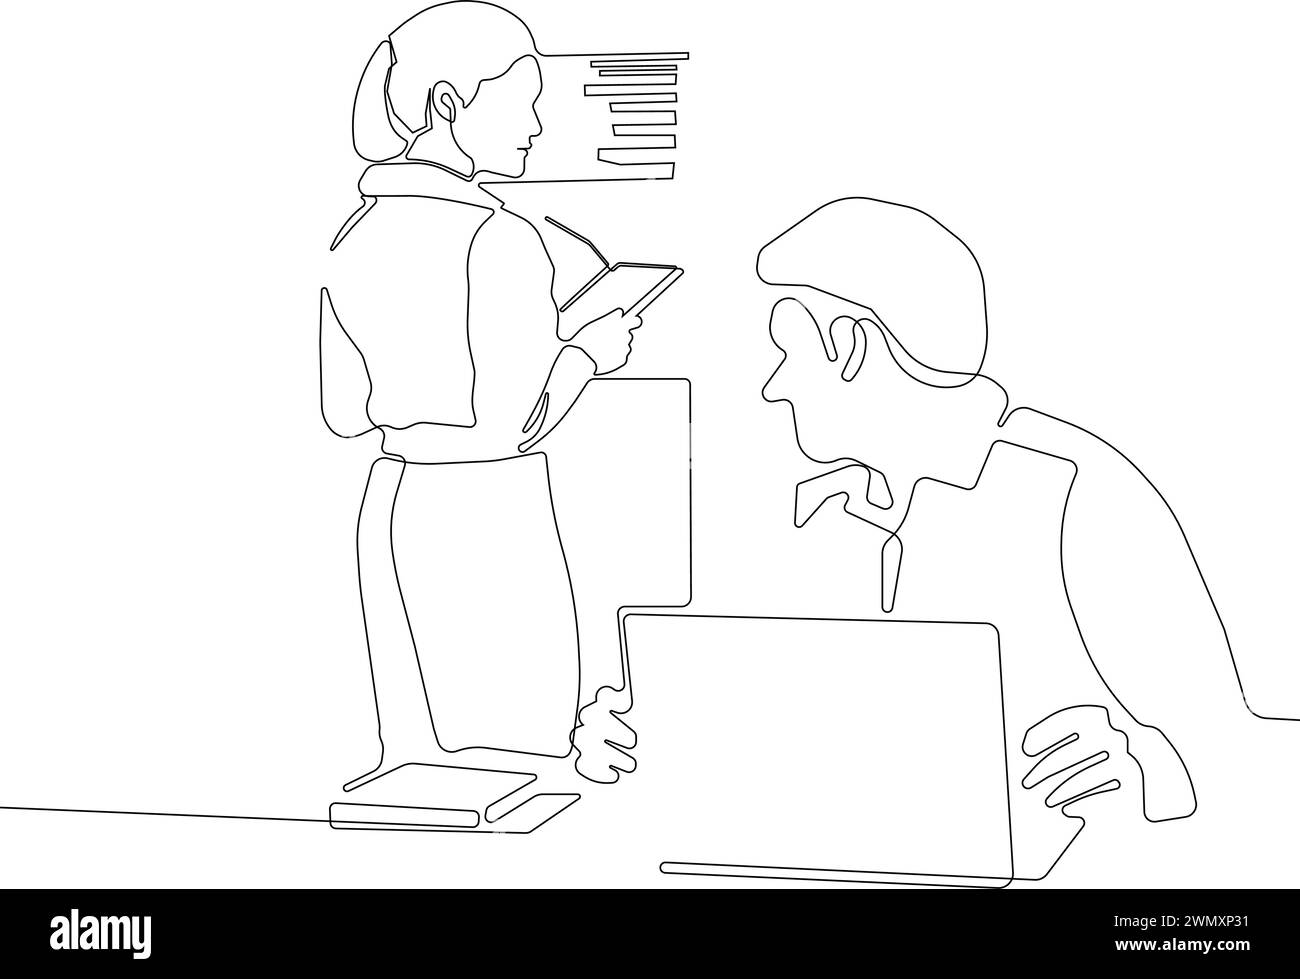 Durchgehende Linienzeichnung eines Büroarbeiters schöne angenehme junge Frau, die in der Nähe des Regals steht und ein Buch hält und Mann an einem Laptop arbeitet Stock Vektor